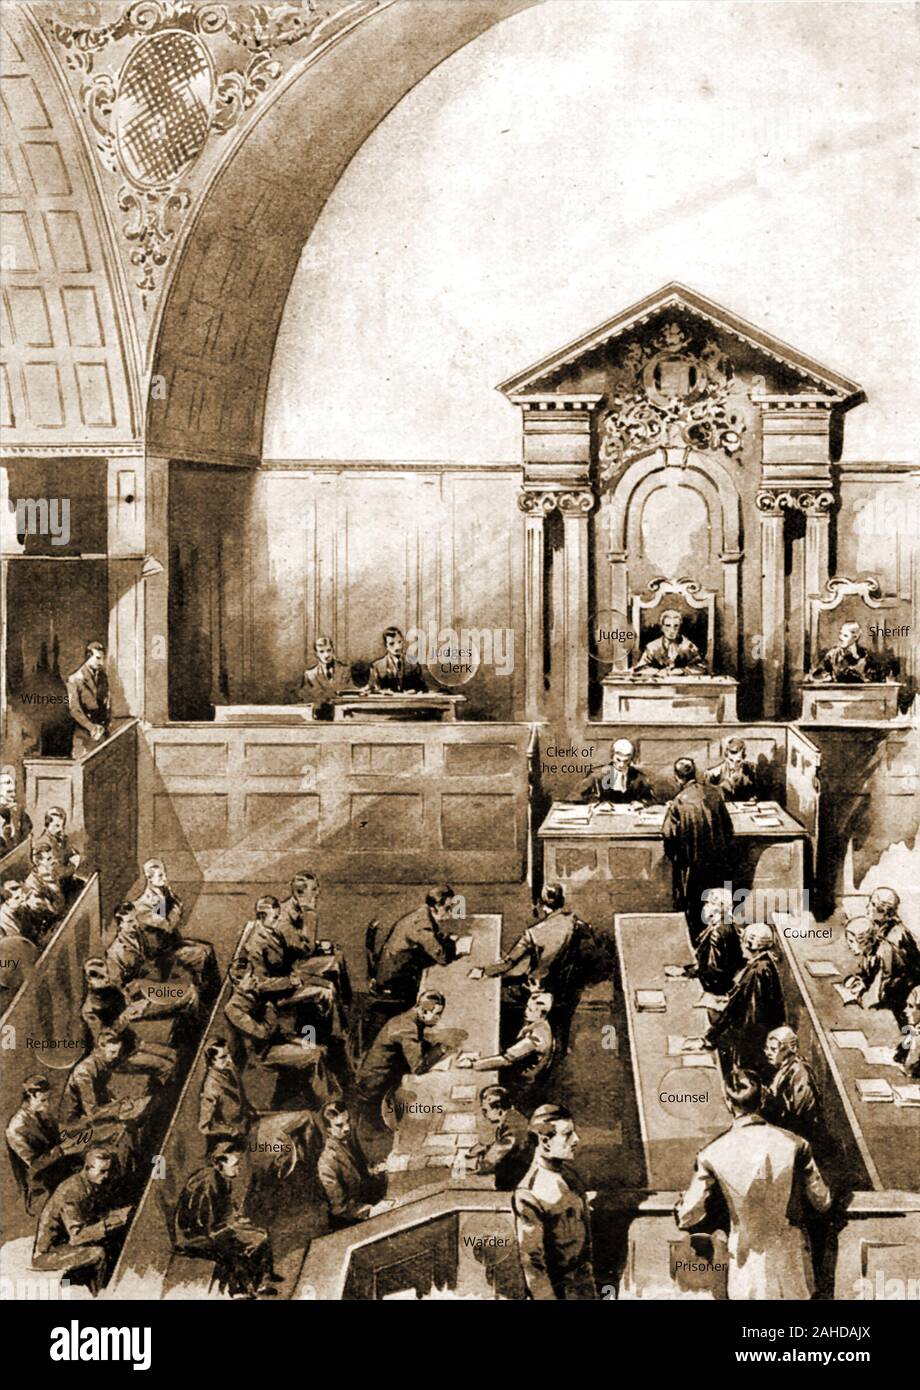 1940 Una ilustración que muestra la escena en una típica sala penal británico de la época, con todo el principio personas nombradas. Foto de stock